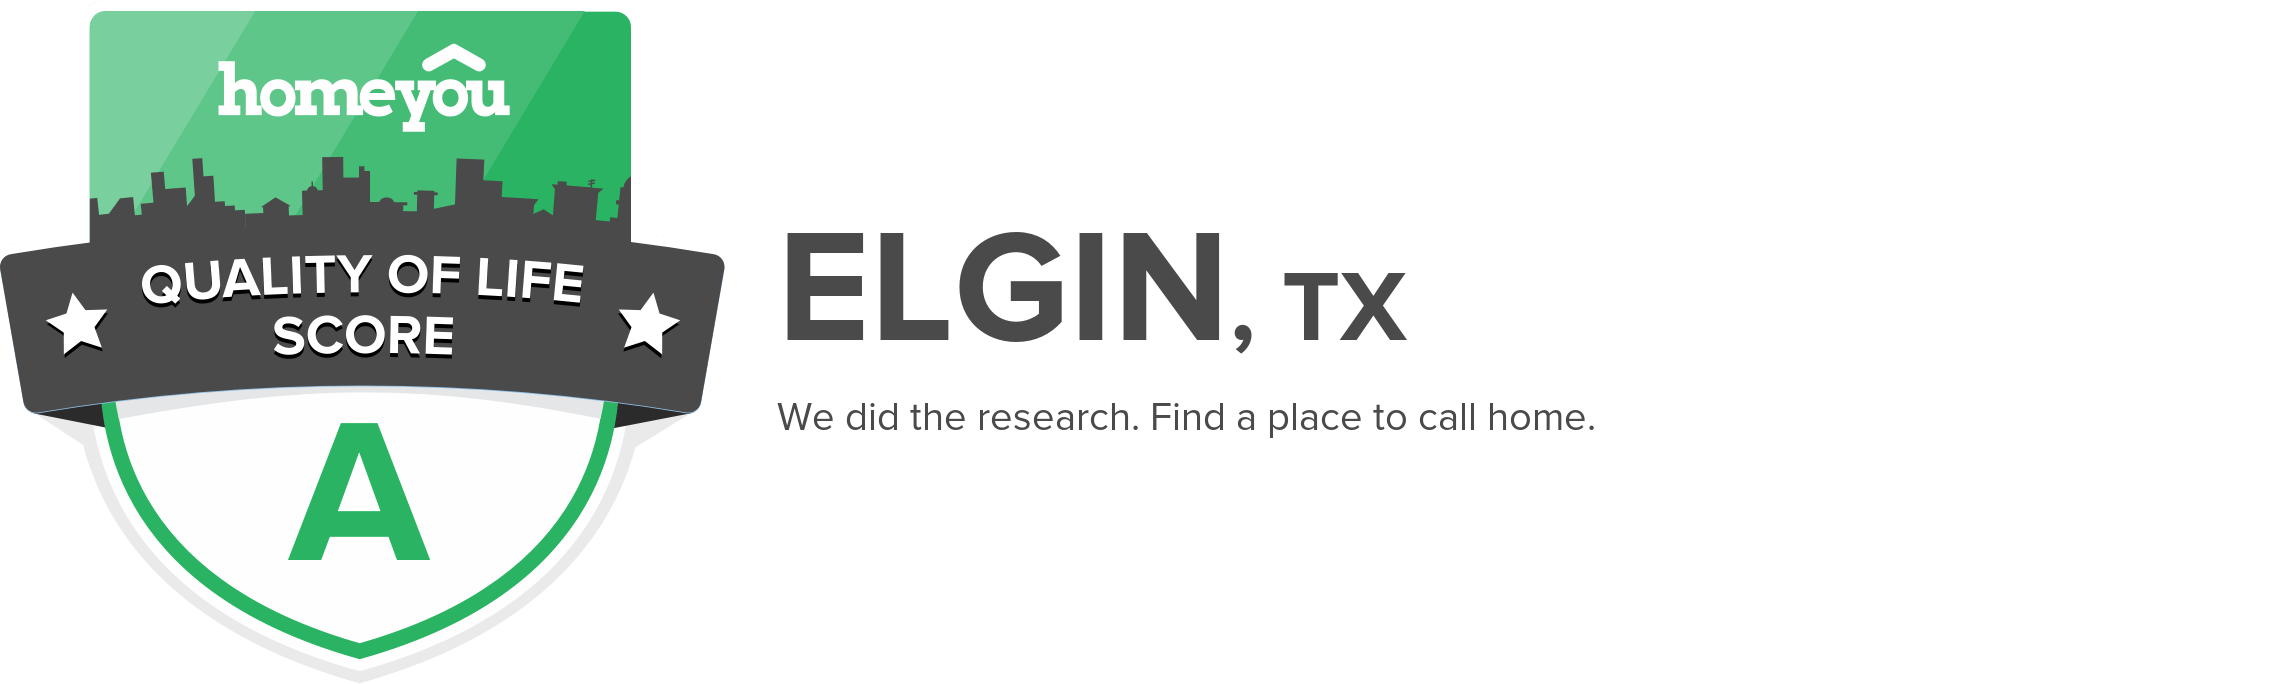 Elgin, TX